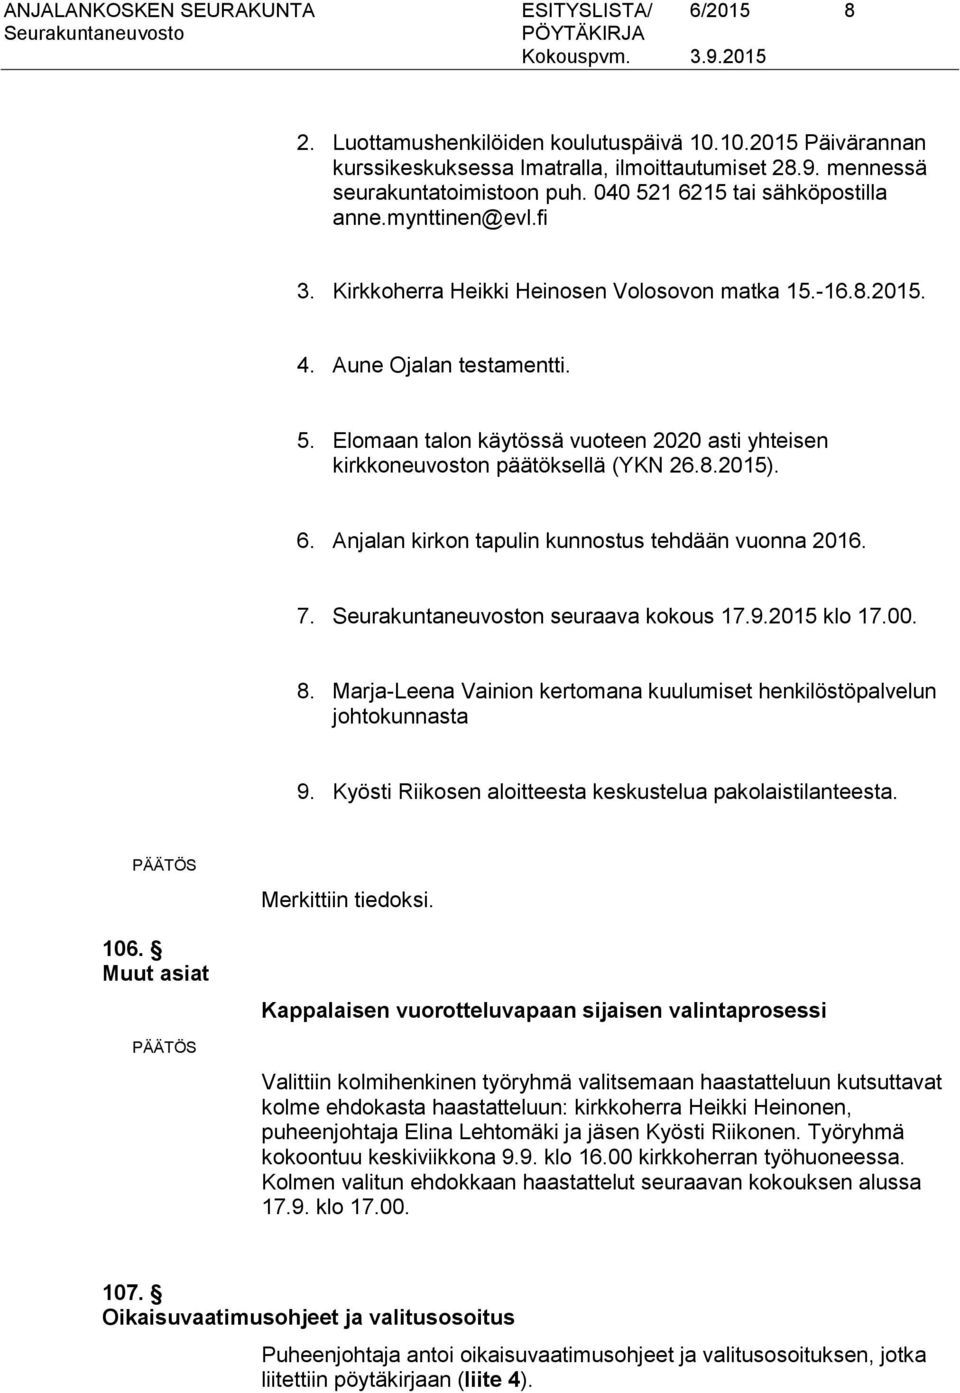 8.2015). 6. Anjalan kirkon tapulin kunnostus tehdään vuonna 2016. 7. n seuraava kokous 17.9.2015 klo 17.00. 8. Marja-Leena Vainion kertomana kuulumiset henkilöstöpalvelun johtokunnasta 9.